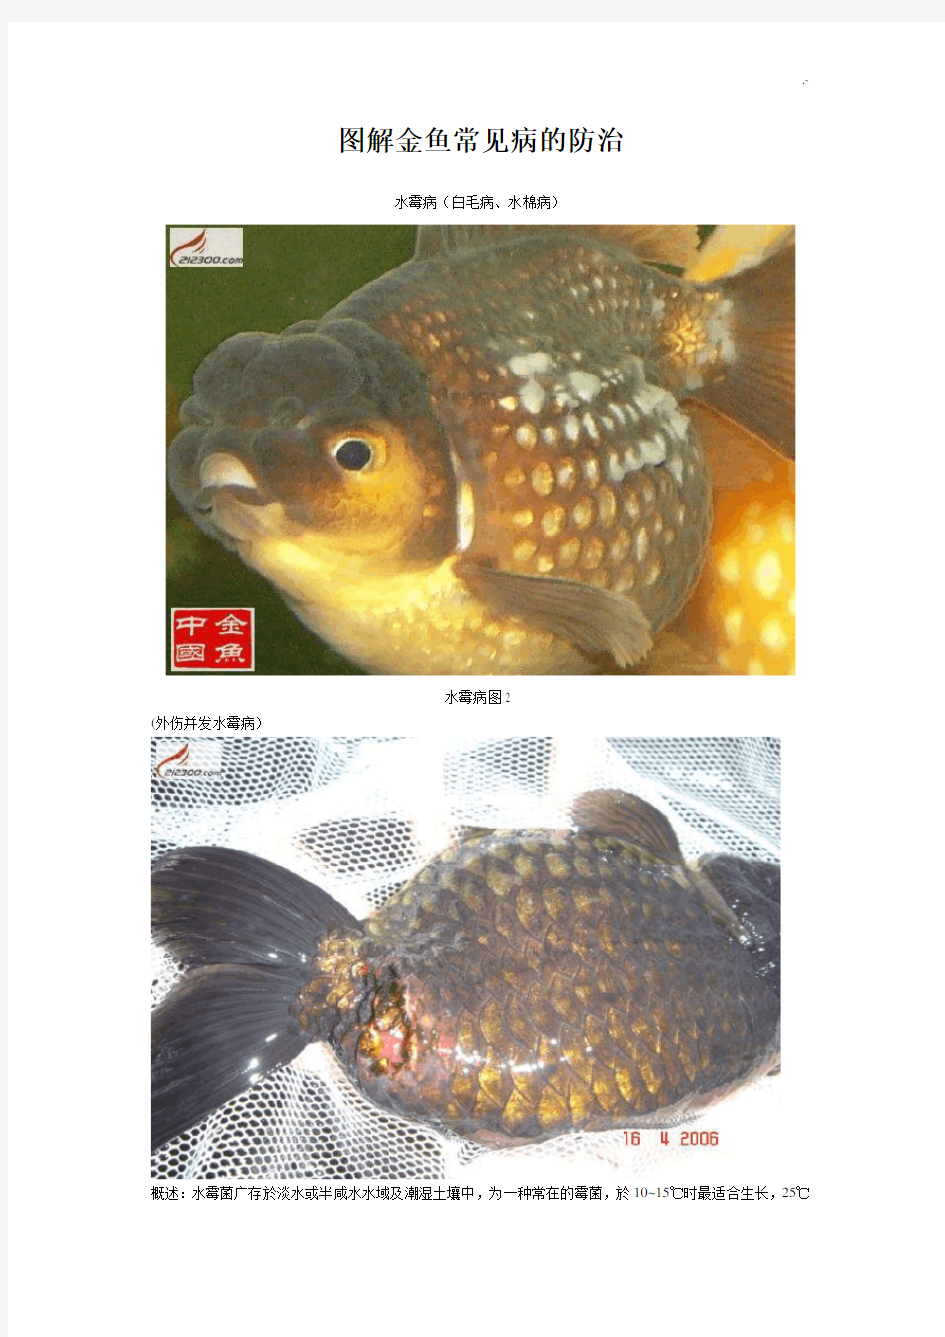 图案详解常见金鱼疾病的防治